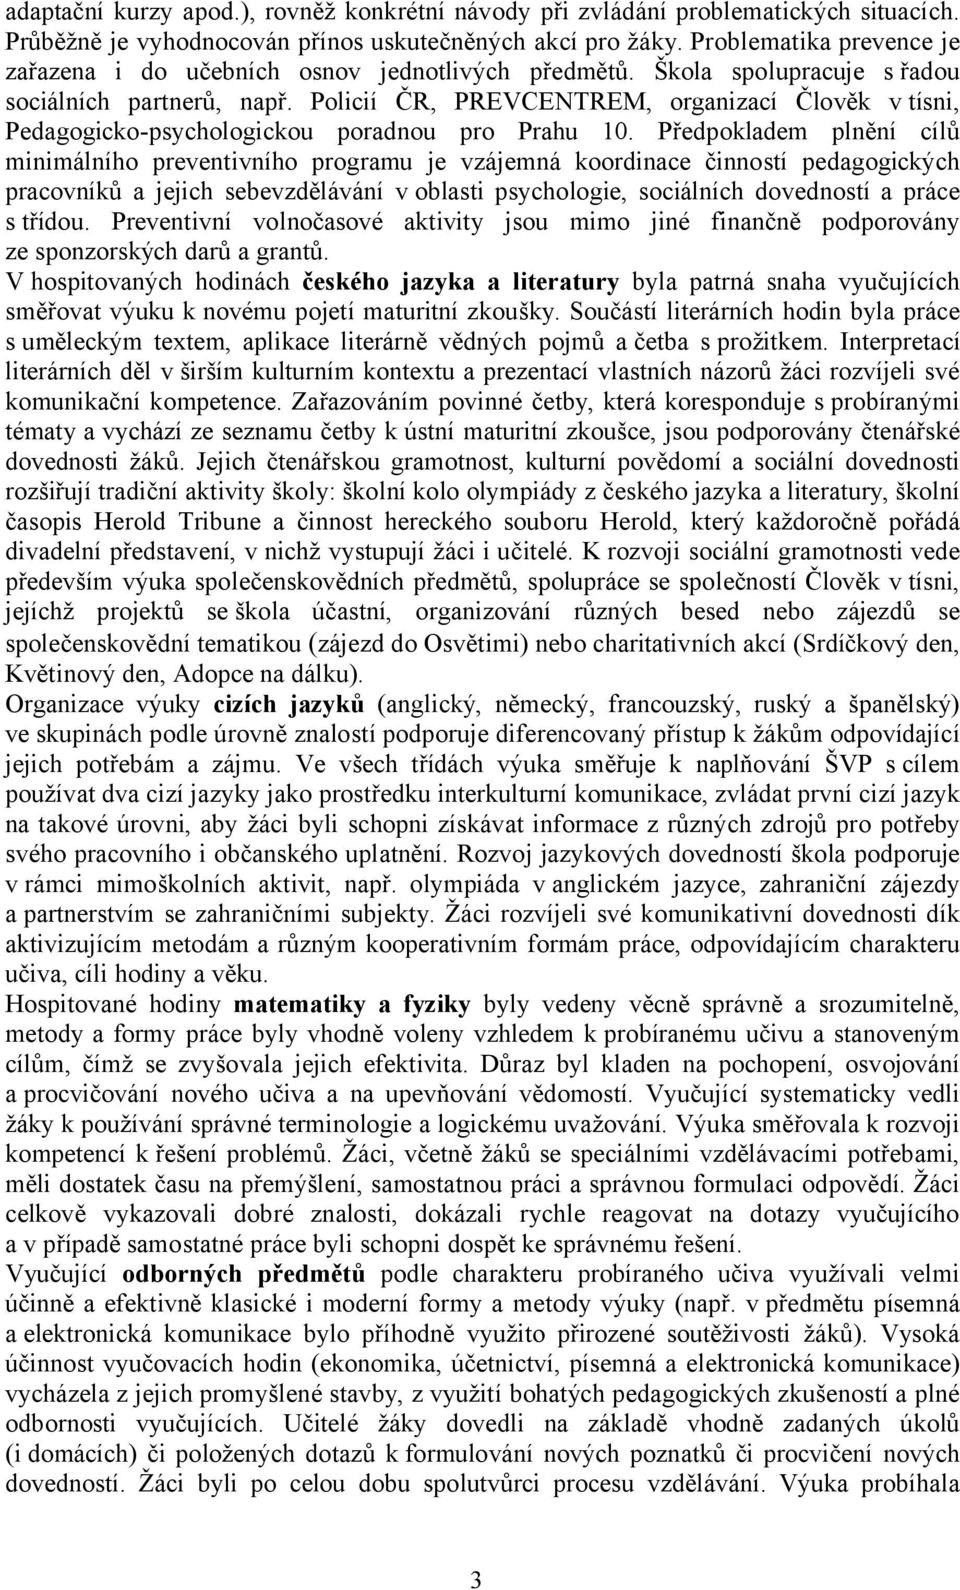 Policií ČR, PREVCENTREM, organizací Člověk v tísni, Pedagogicko-psychologickou poradnou pro Prahu 10.